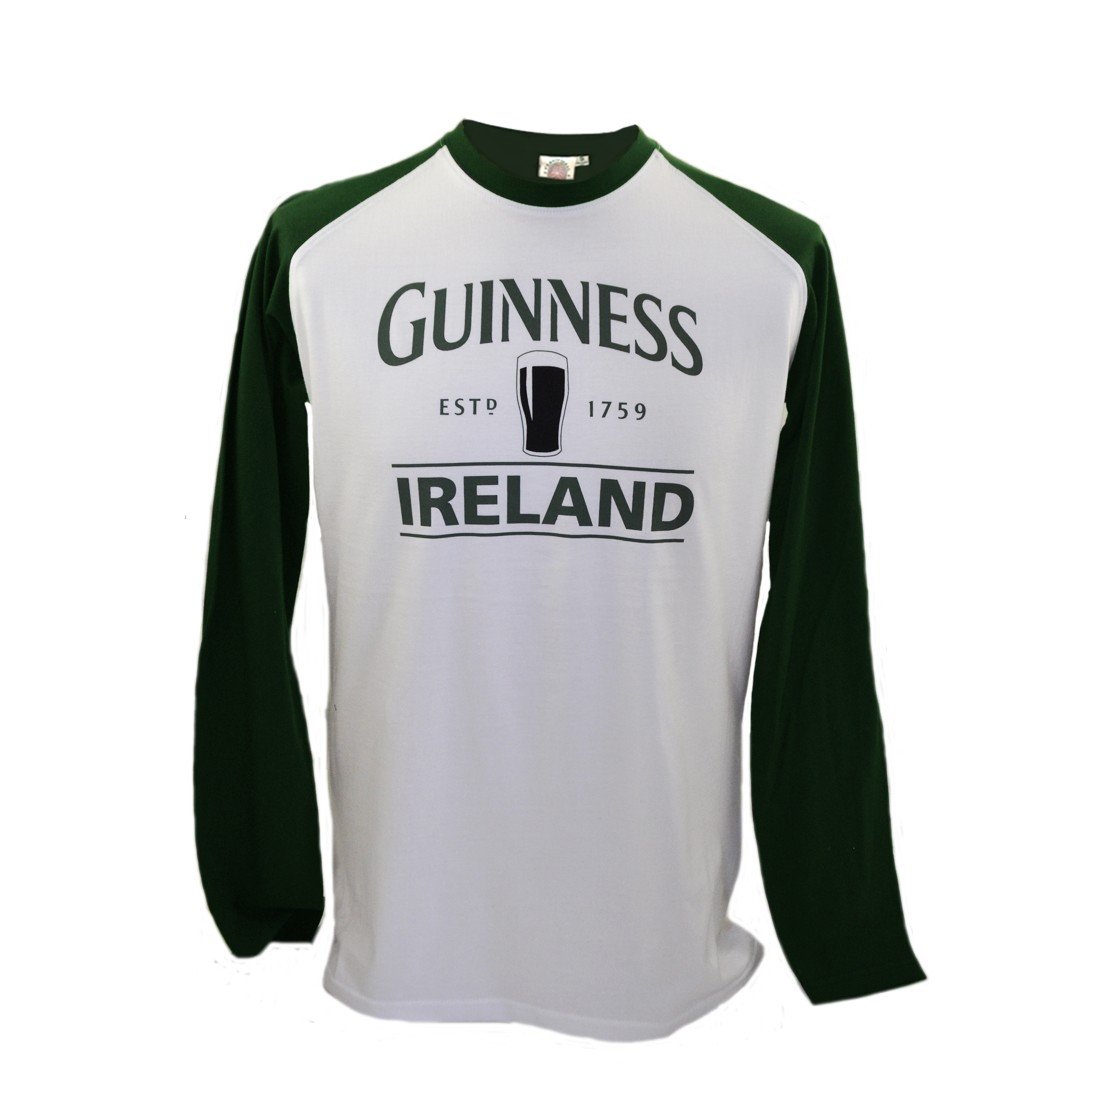 Guinness langärmeliges T-Shirt mit Bierkrug und „Guinness Ireland”, weiß mit grünen Ärmeln